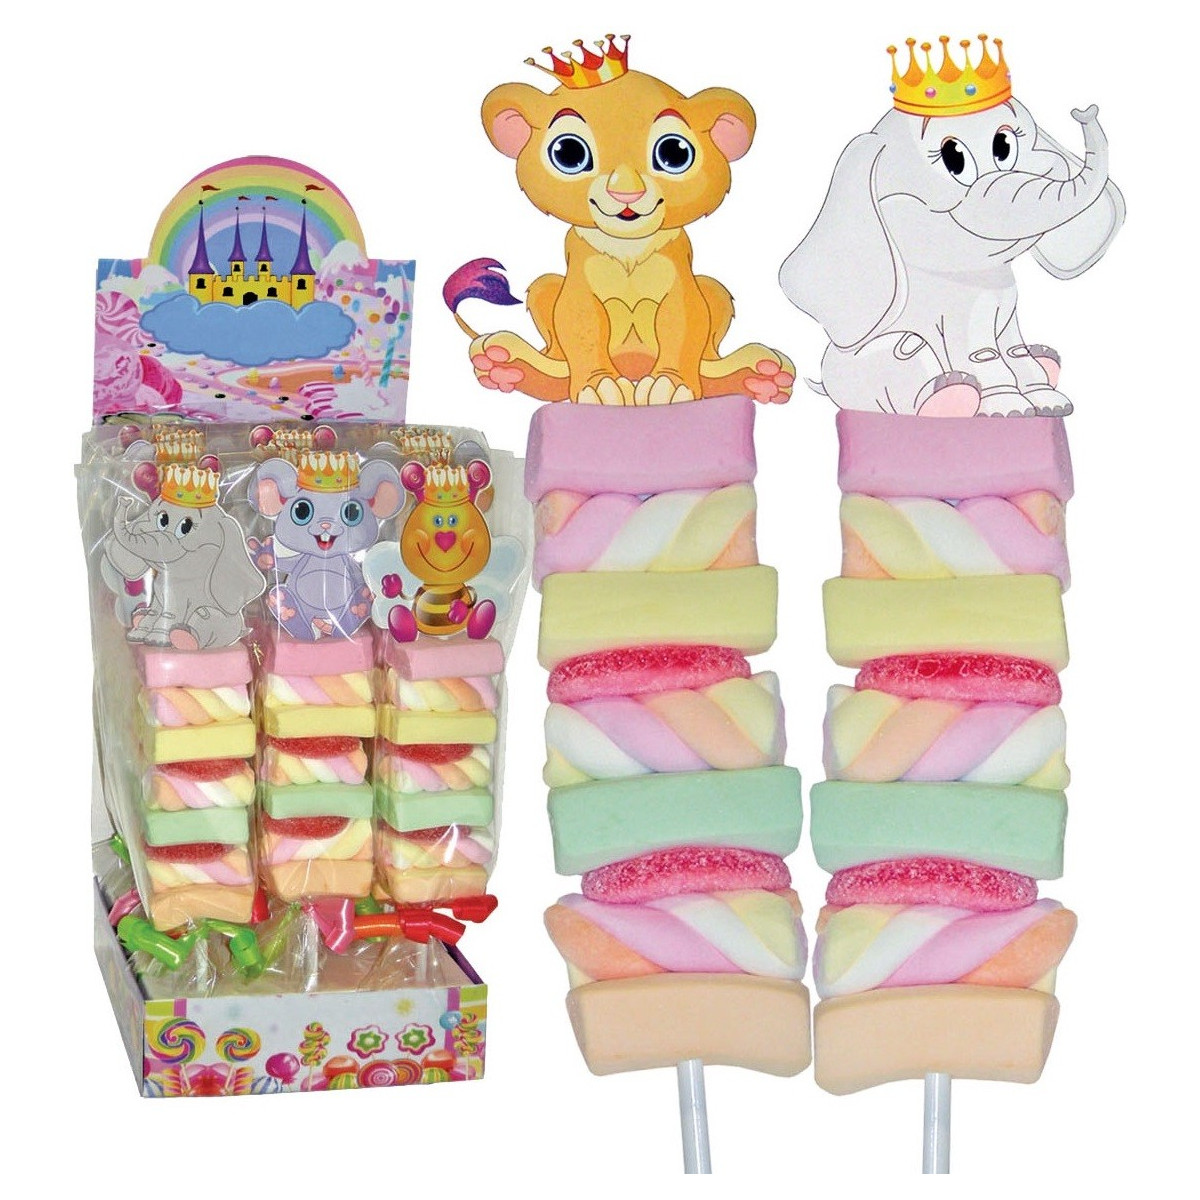 Brochettes de bonbons personnalisées pour anniversaire et autres événements  pour enfants et adultes fabriquées sur miramas - Frangine et chocolat